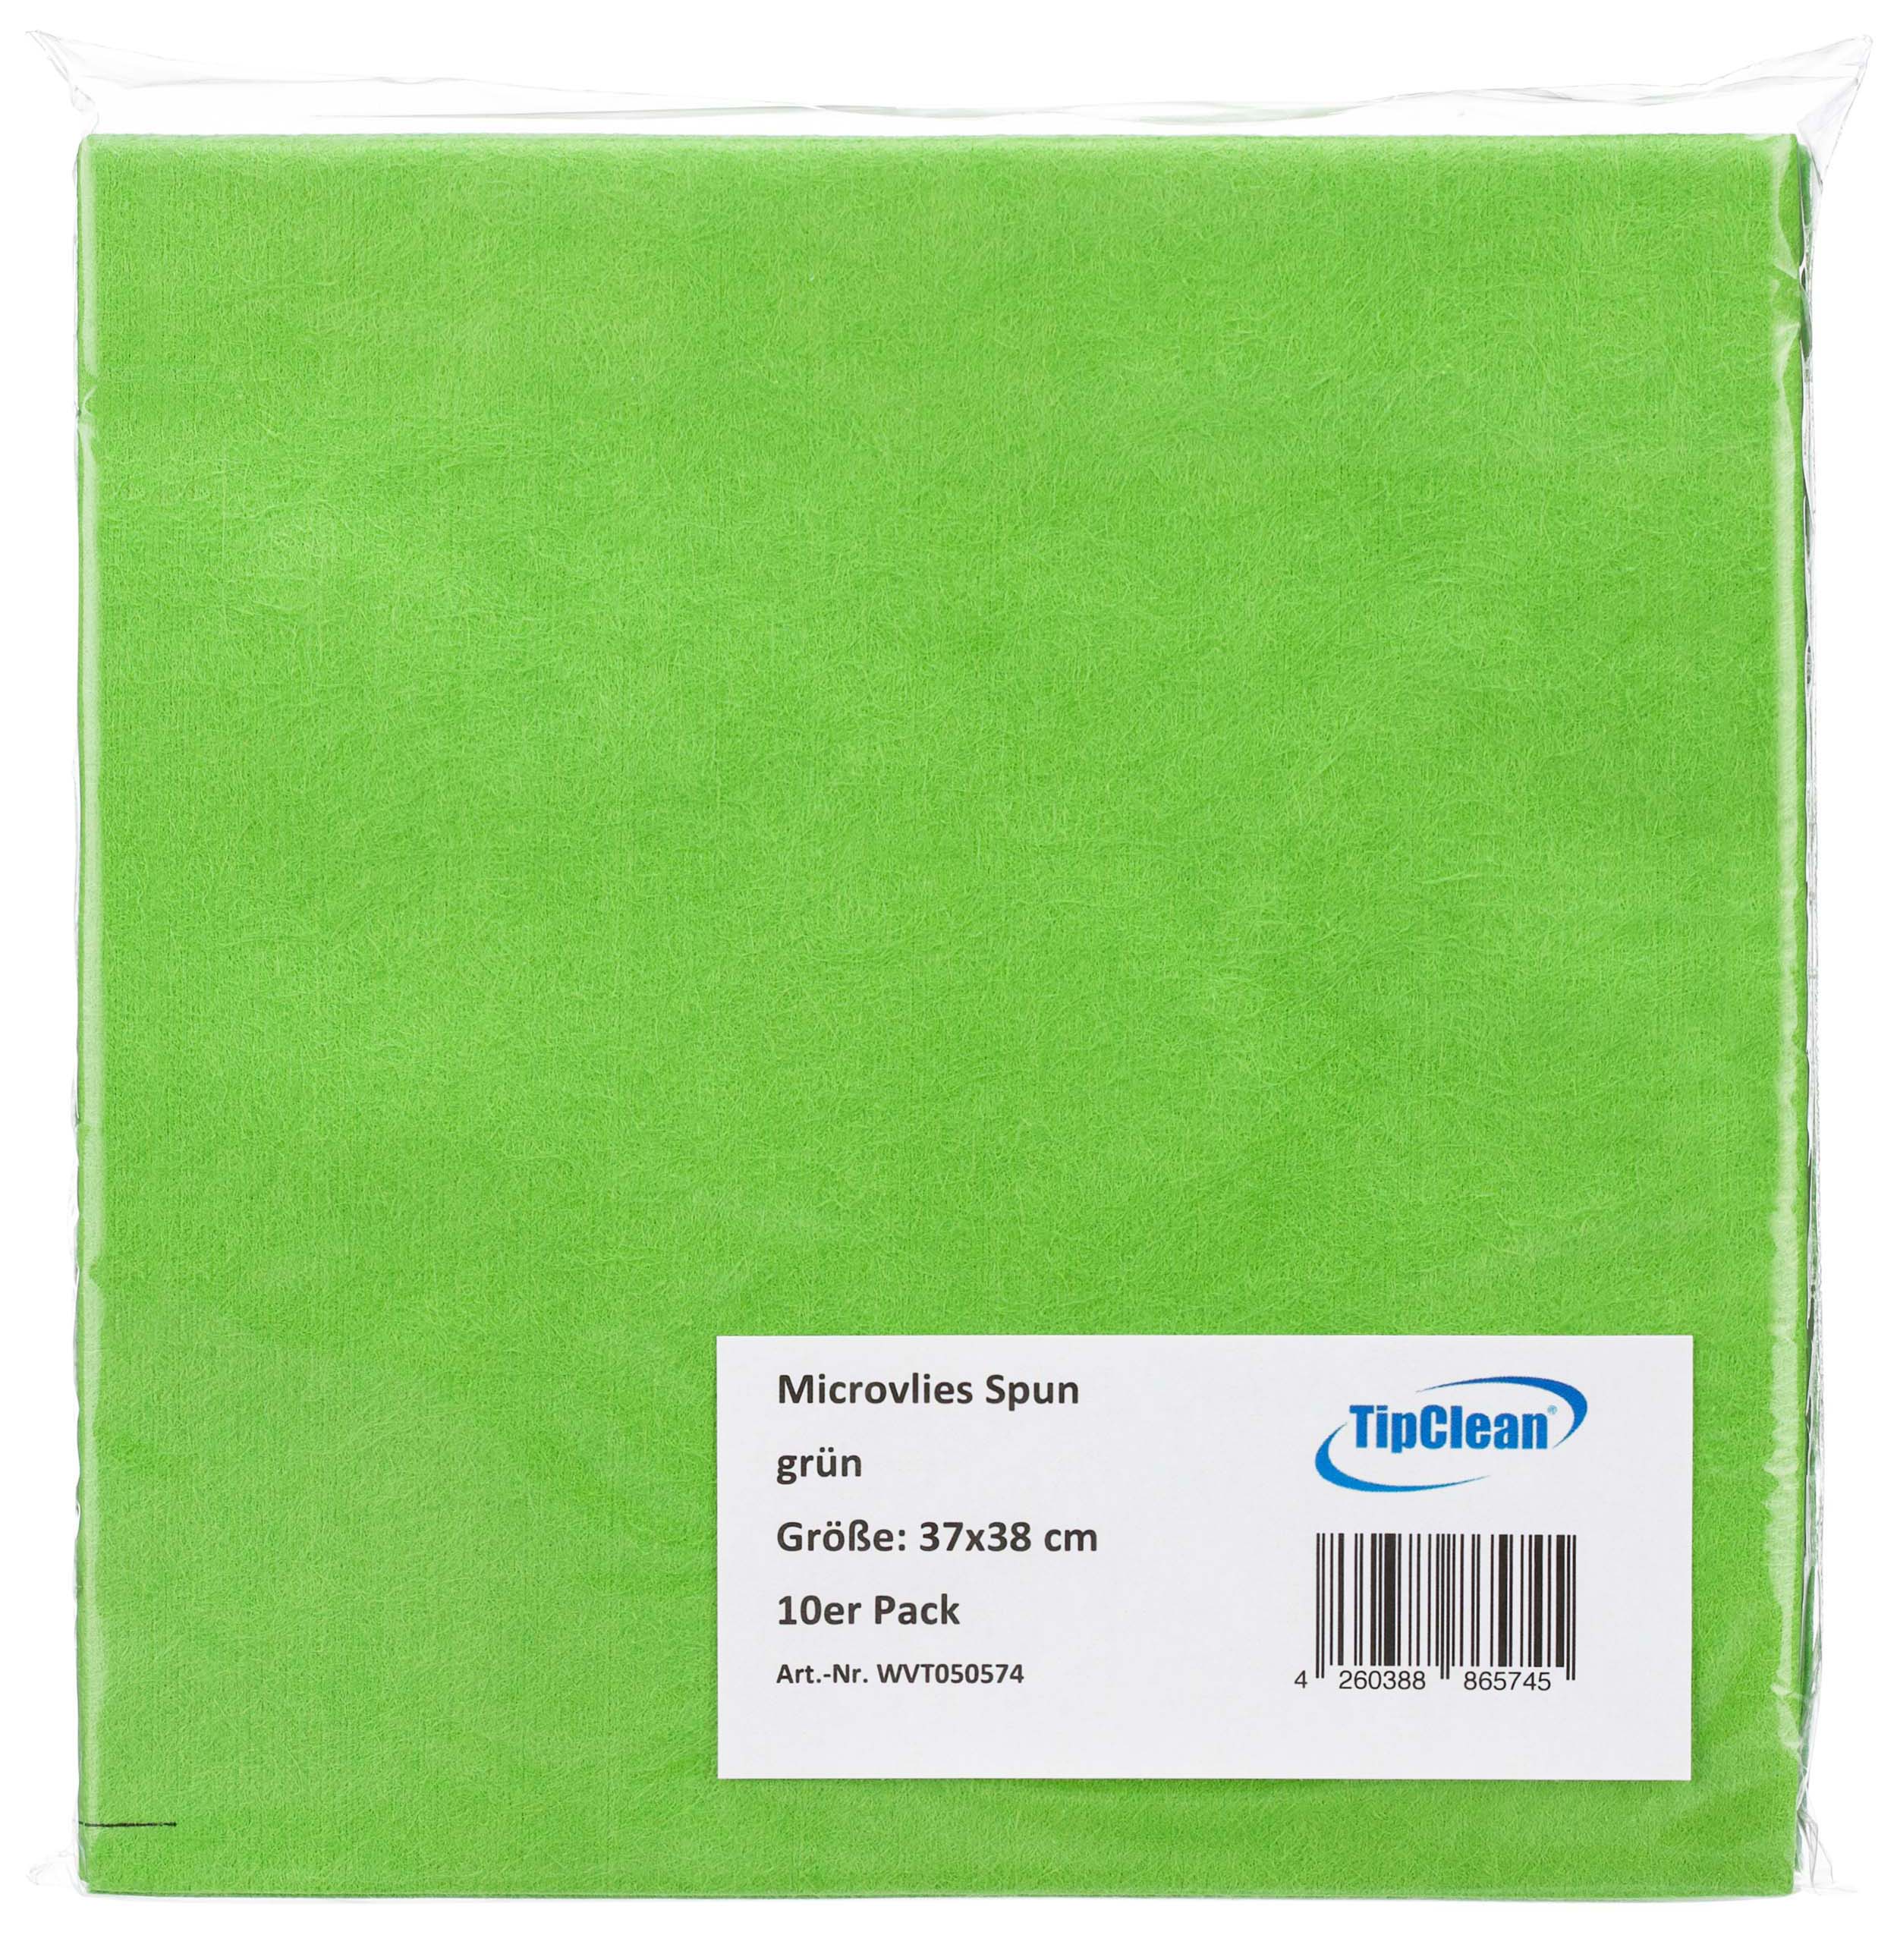 TipClean Microvlies Spun grün - 37 x 38 cm - 10 x 10er Pack